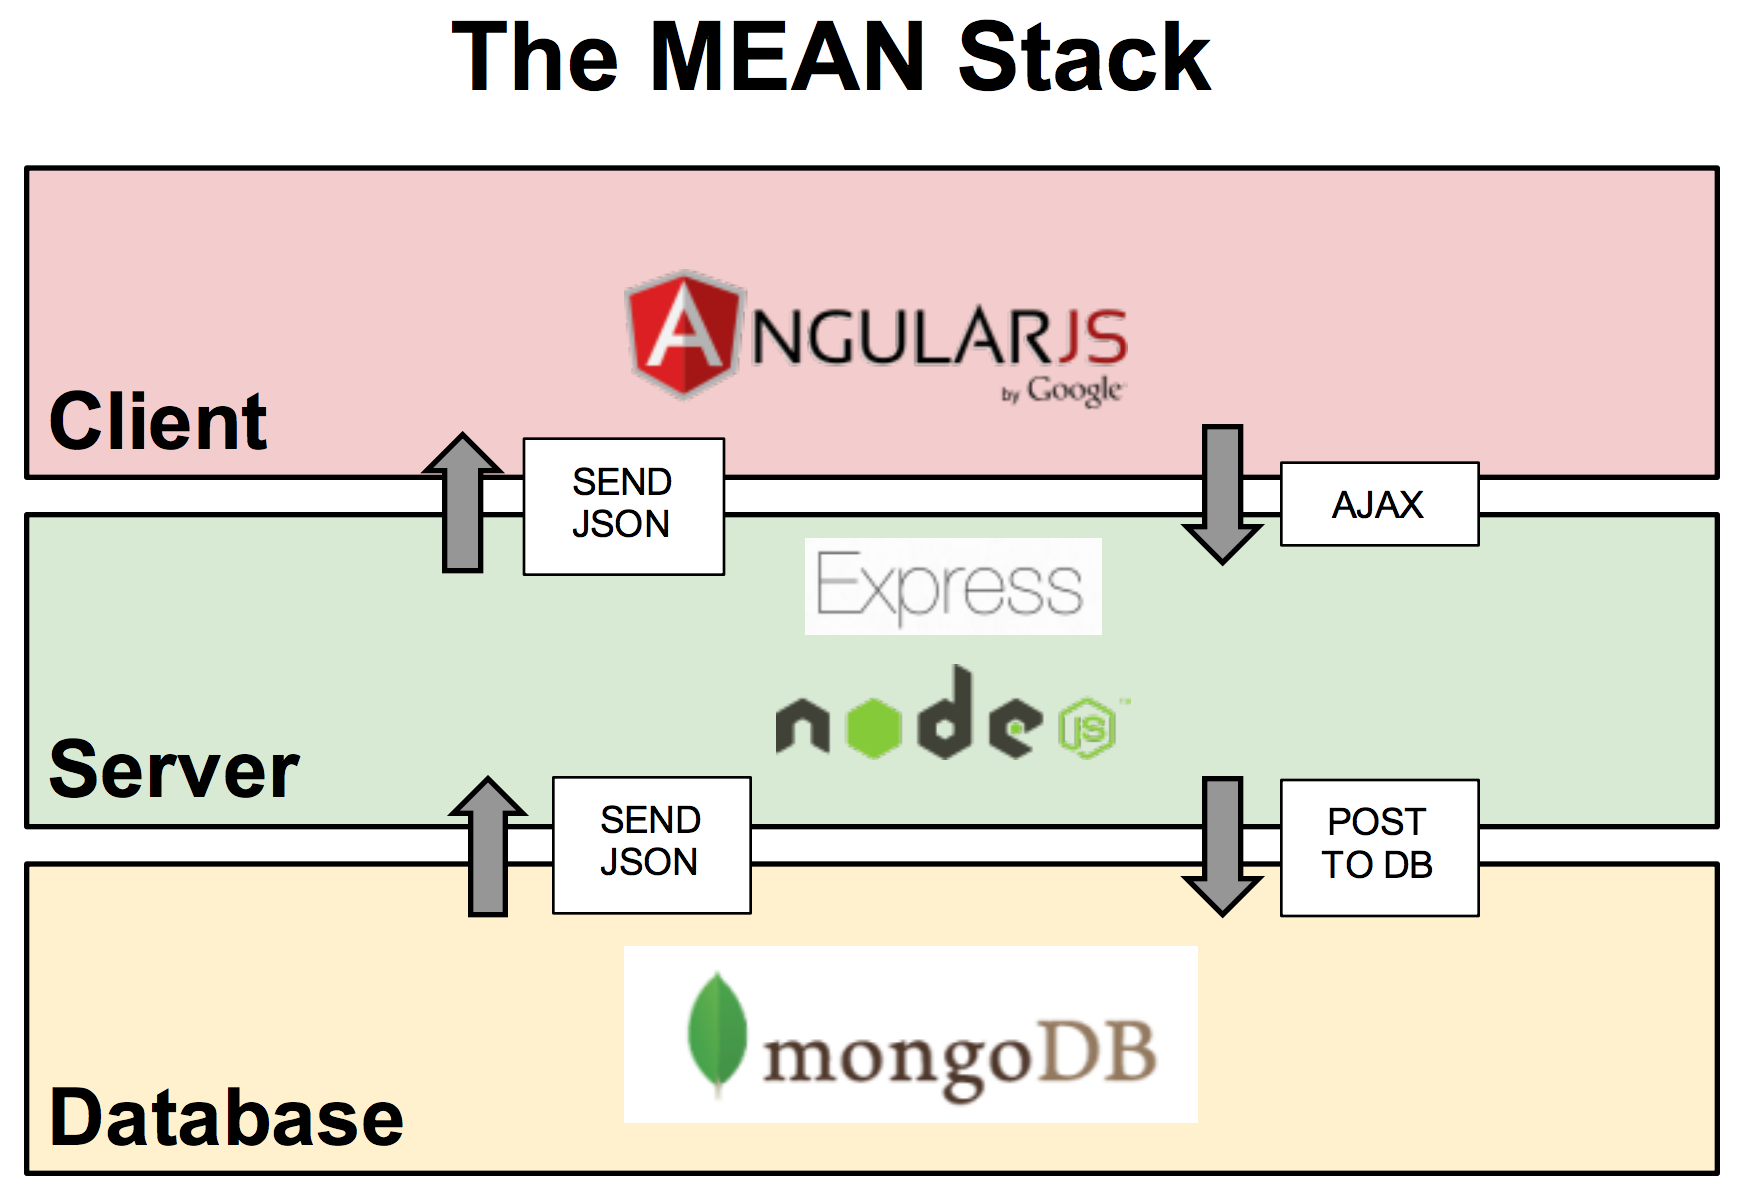 mongodb for node js